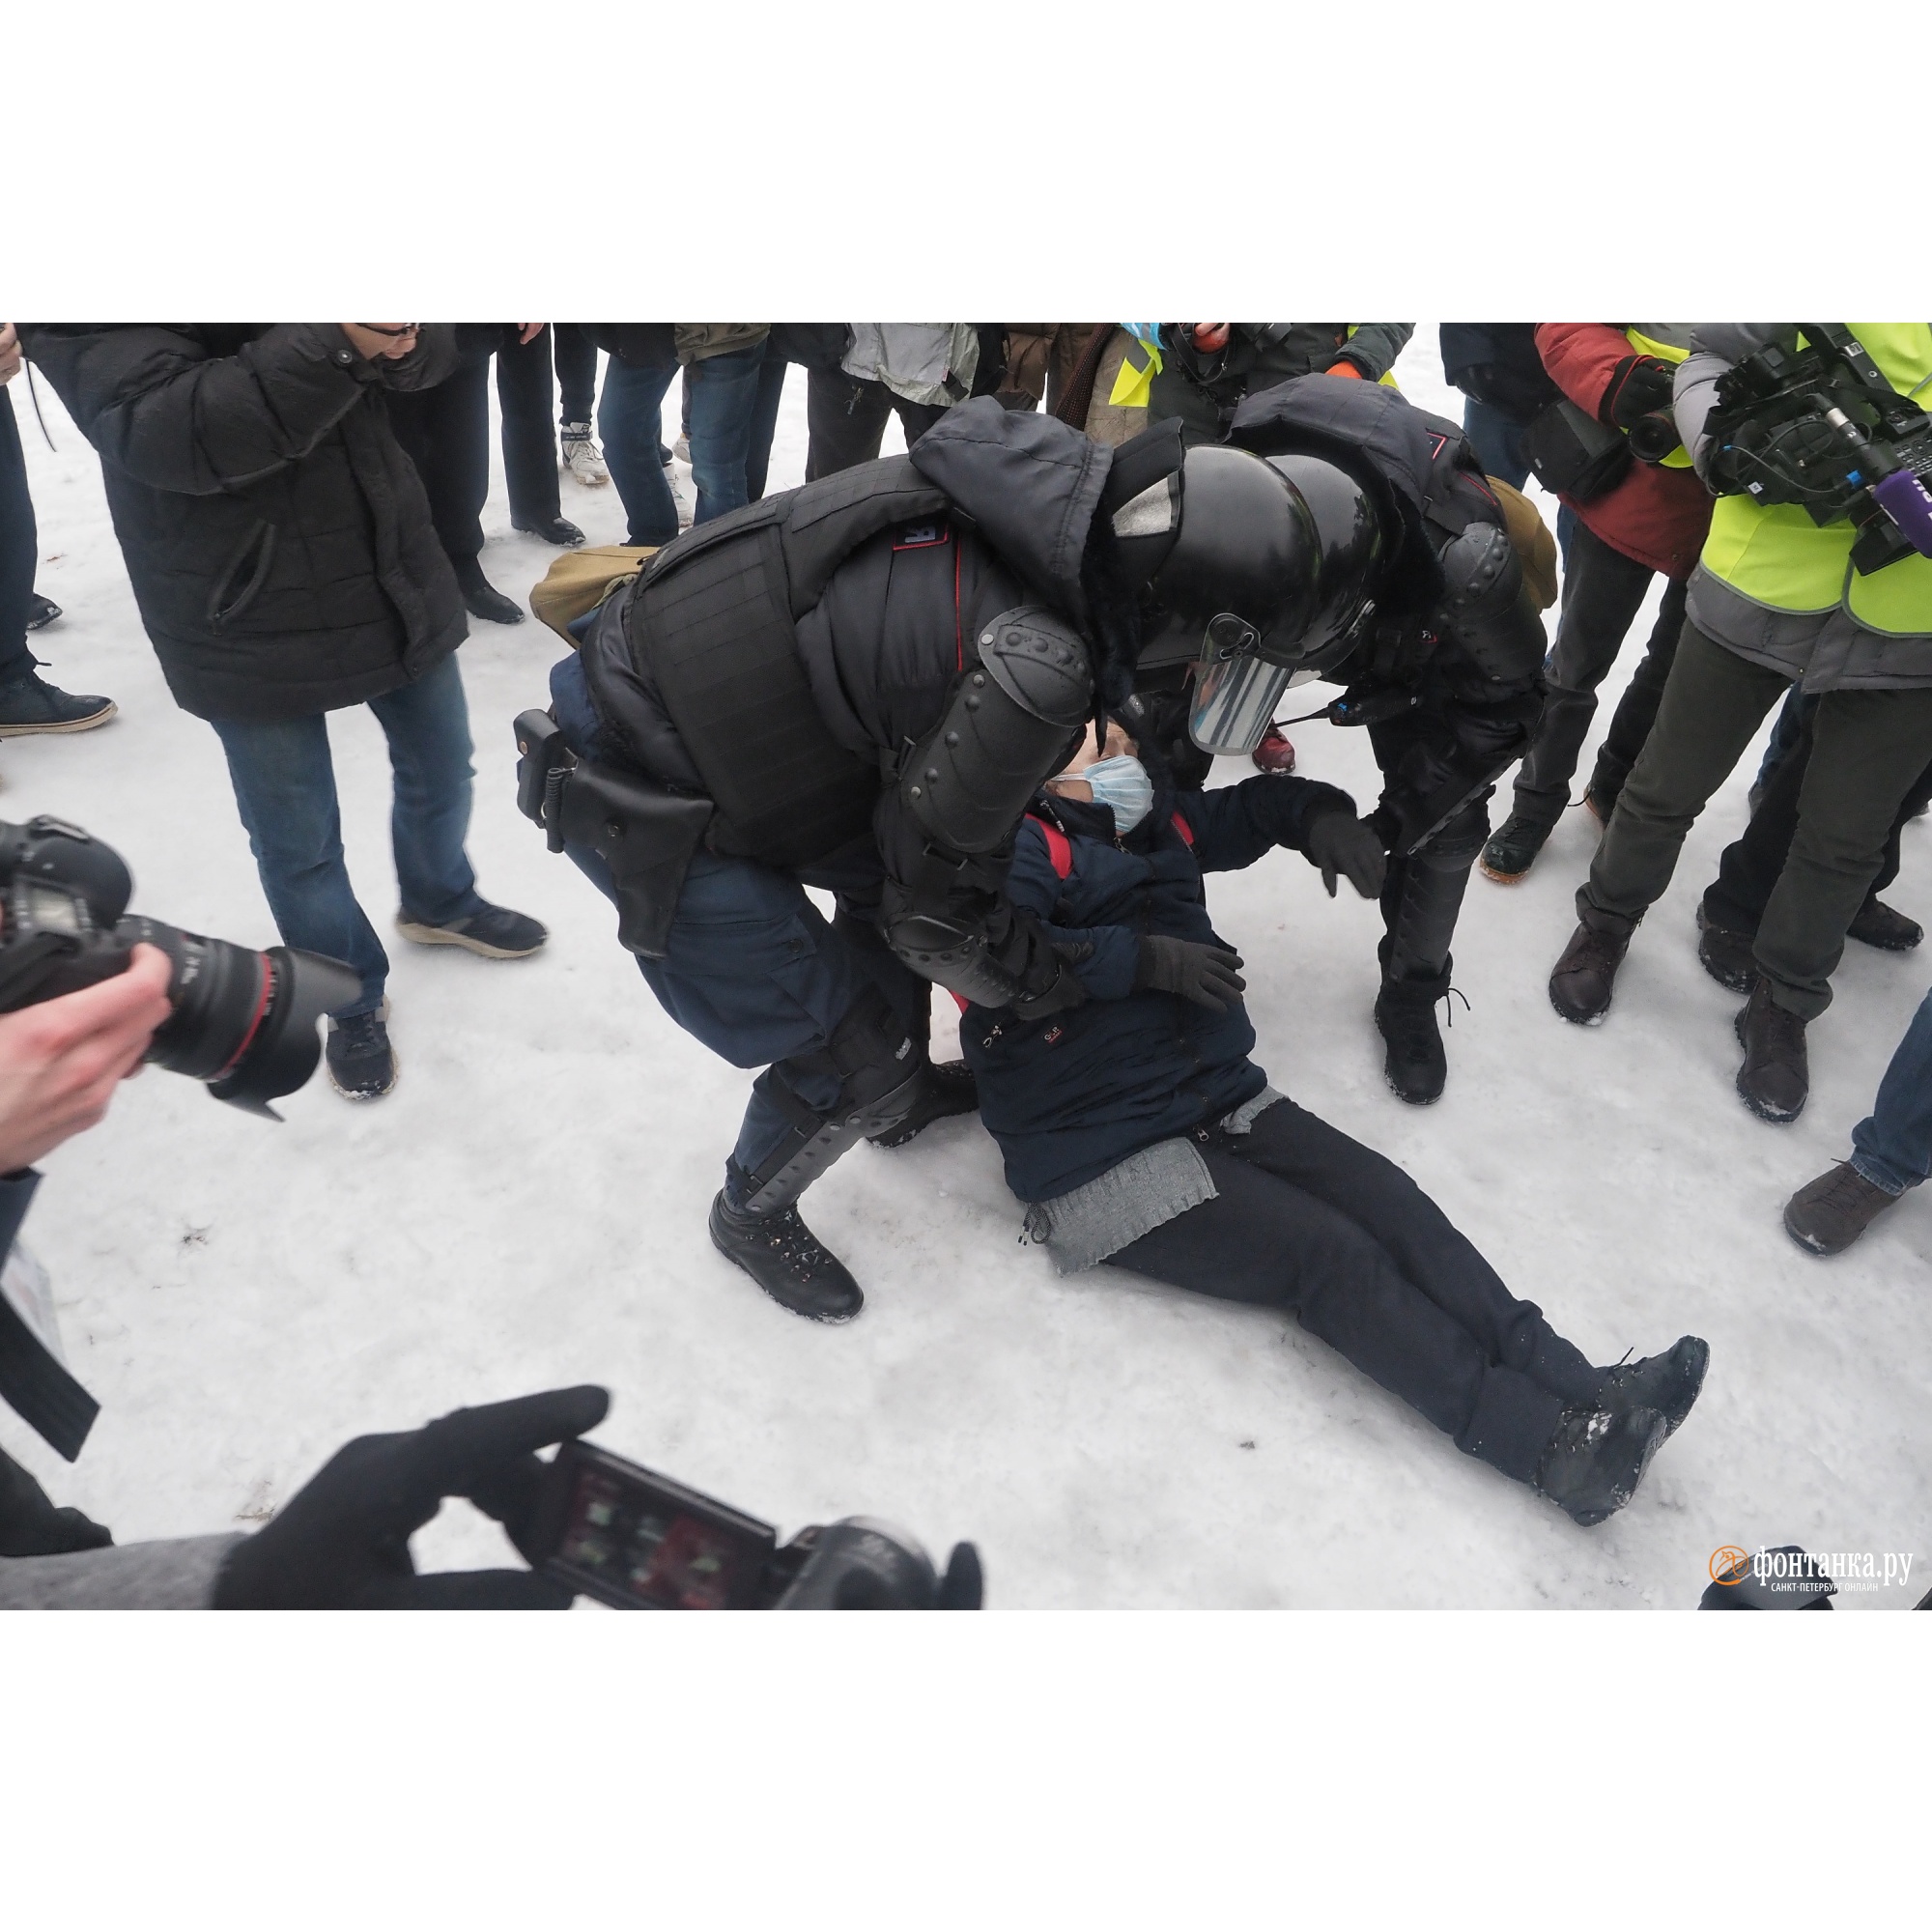 Популярные новости дня. Задержания протесты 23 января 2021. Последние новости Петербурга. Жесткие кадры с протестов.